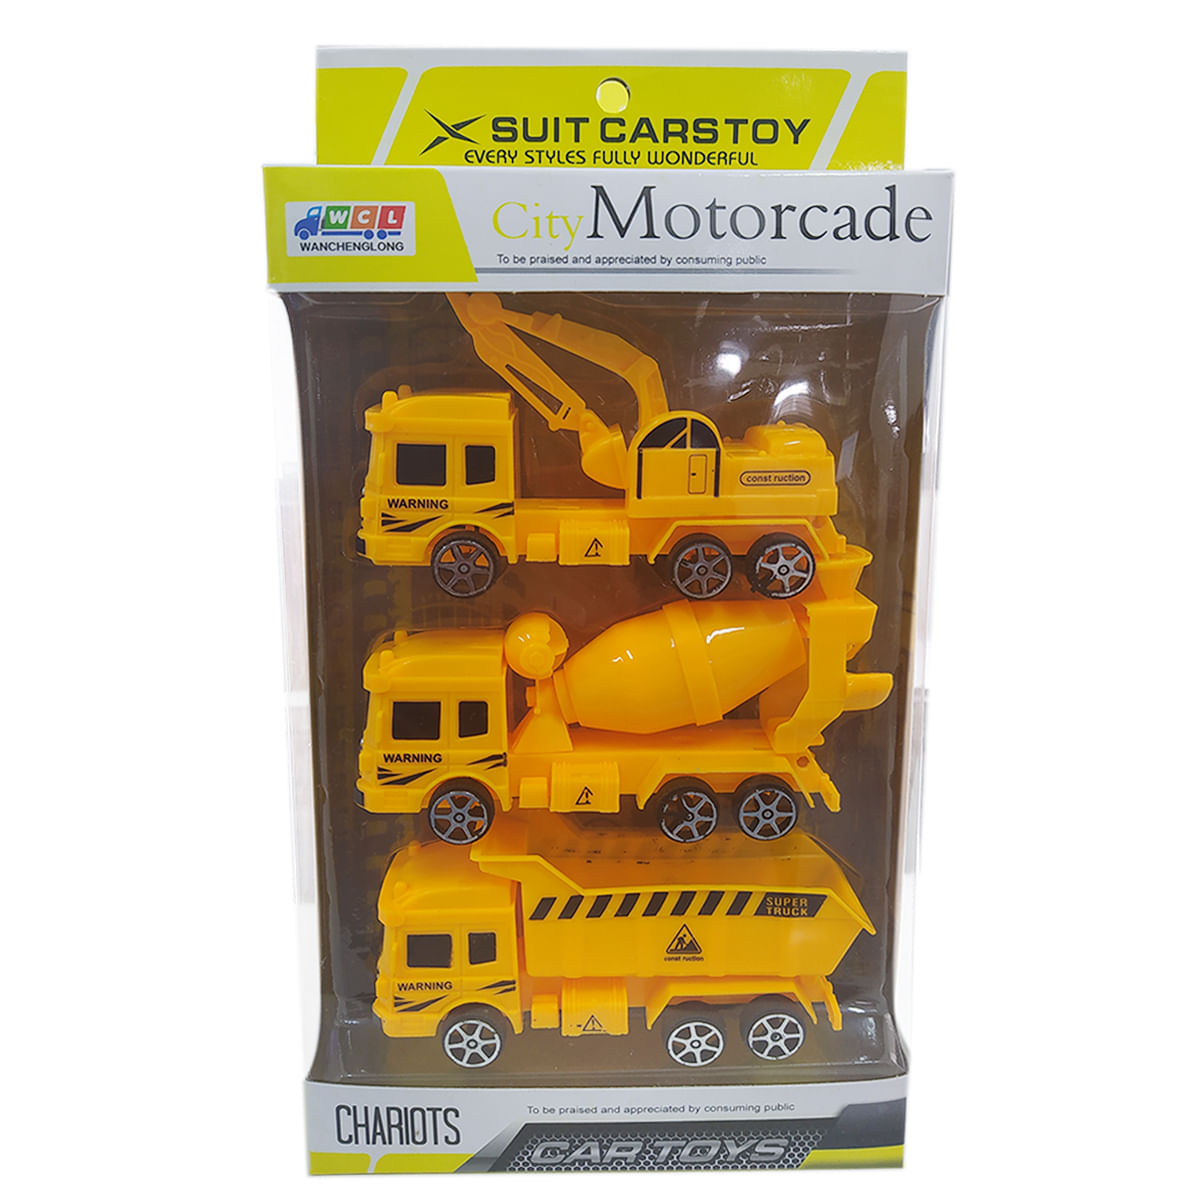 Caminhão Brinquedo Infantil Caminhãozinho 4x4 Amarelo - Carrefour